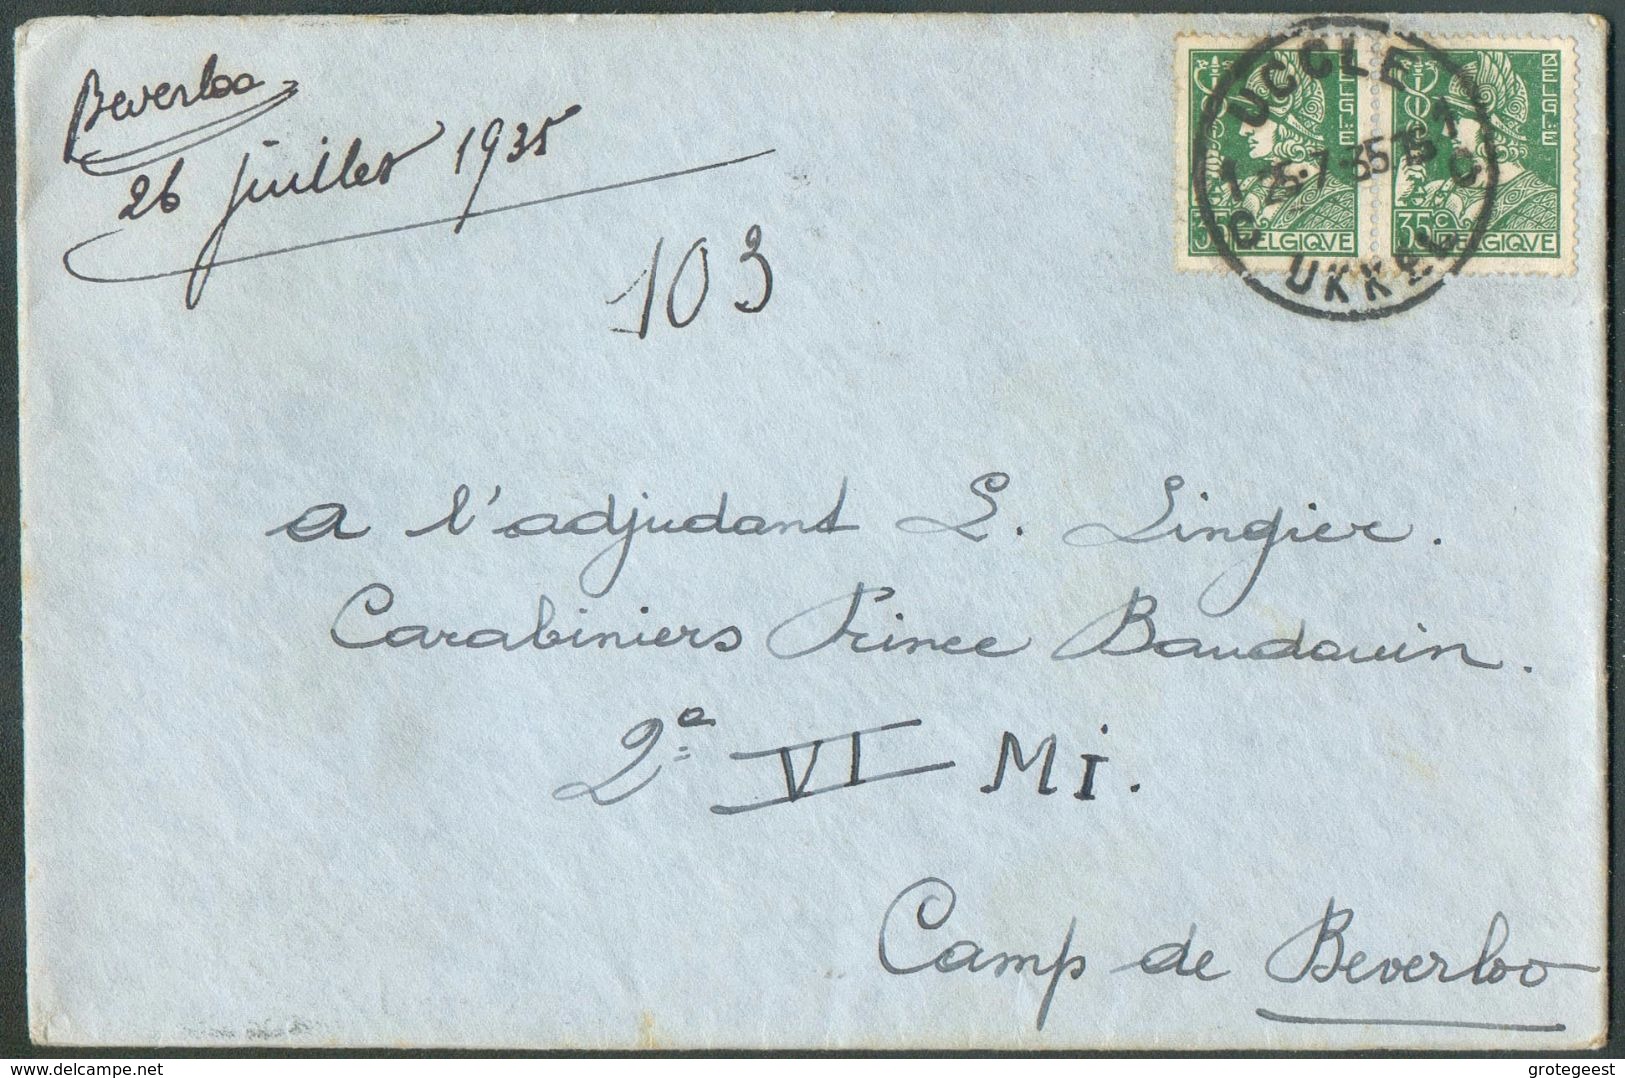 35 Cent. MERCURE (x2)  Obl. Sc DeUCCLE  Sur Lettre Du 25-7-1935 Vers Adjudant Lingier, Carabiniers Prince Baudouin 2è Au - 1932 Ceres En Mercurius